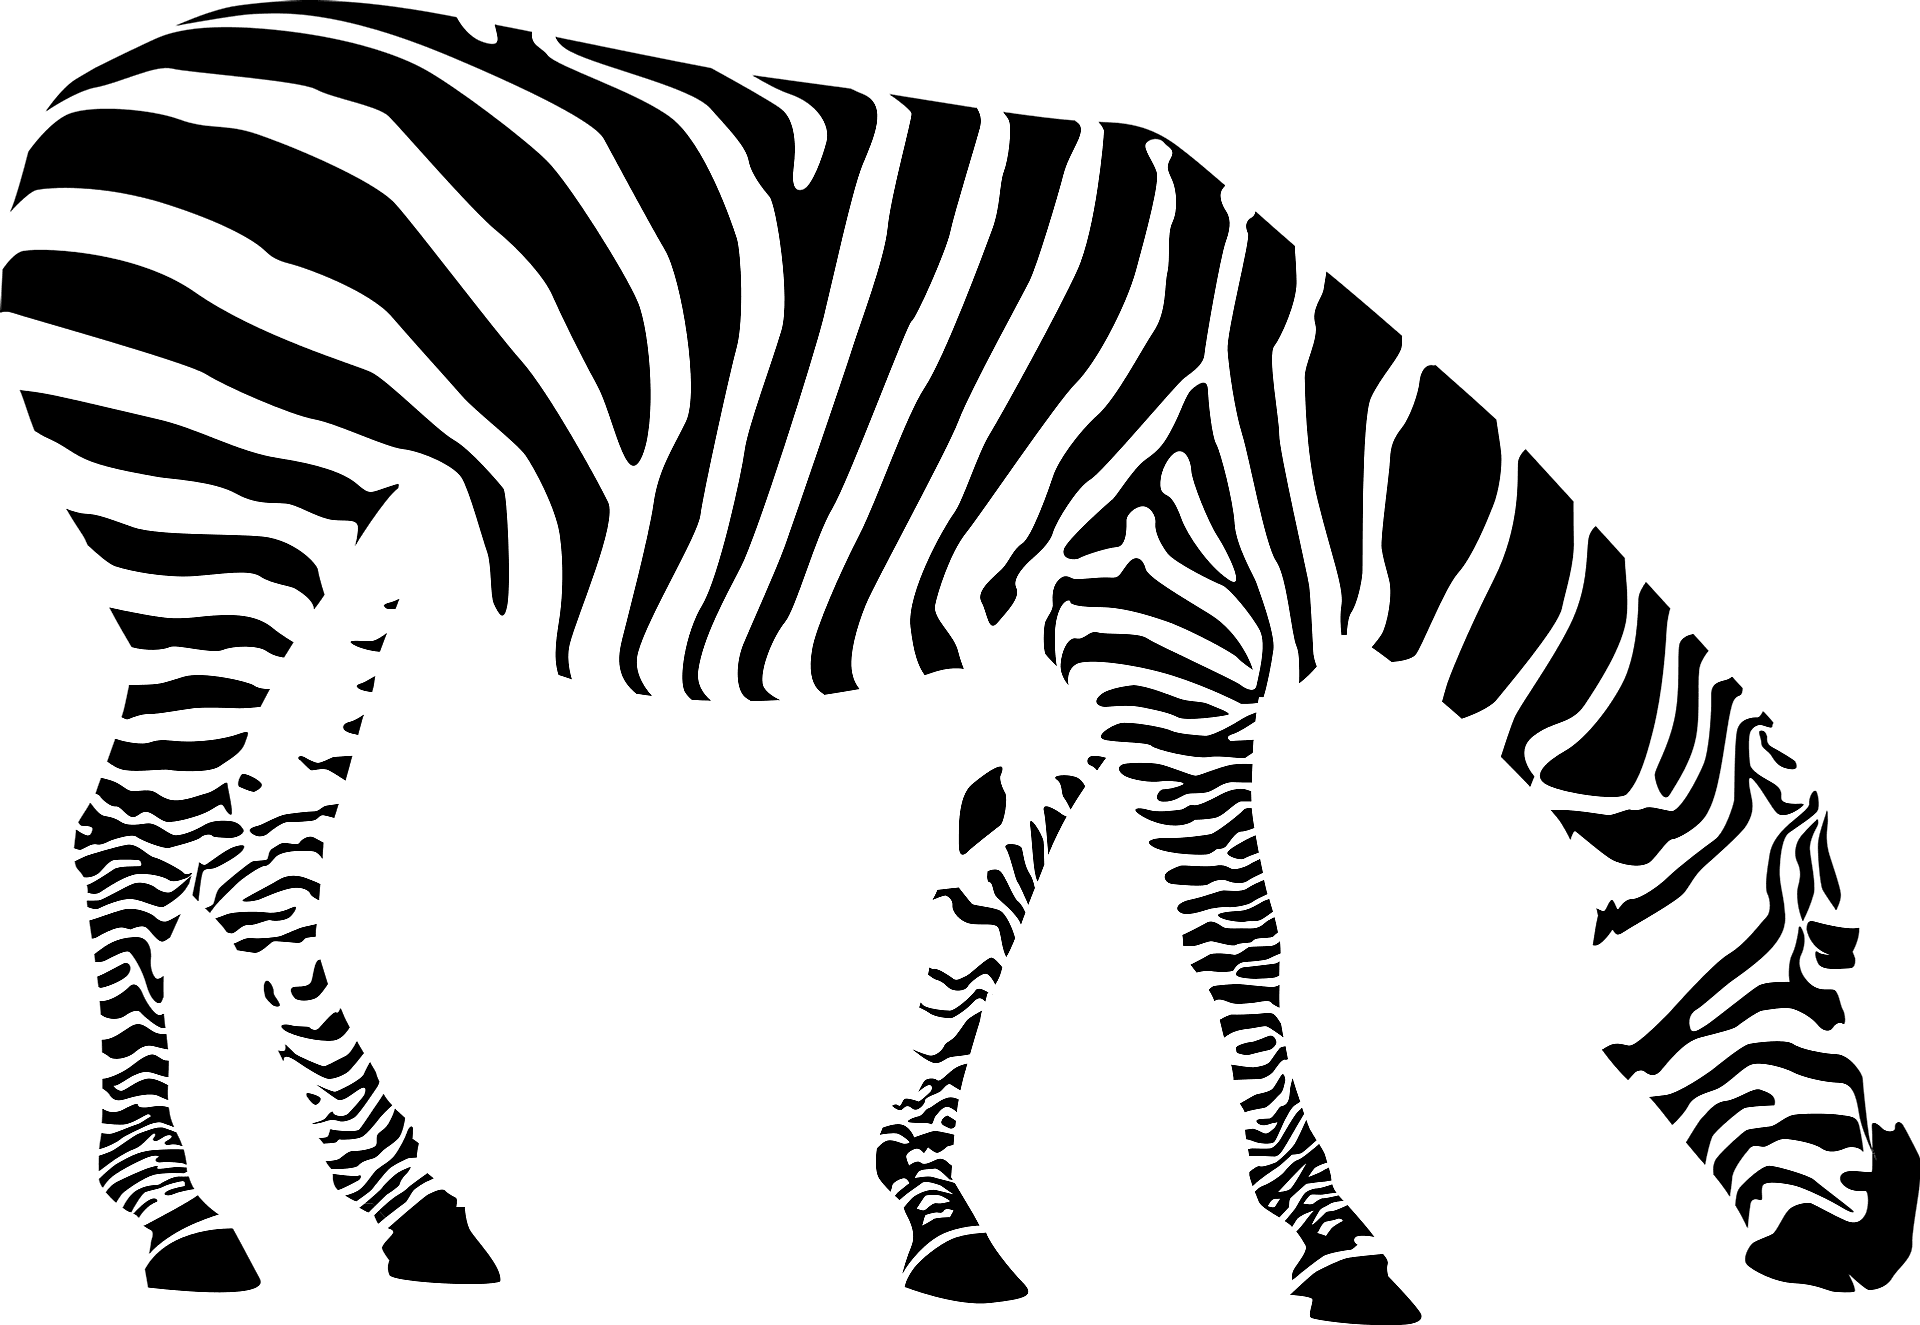 Farvelægningsside af en zebra